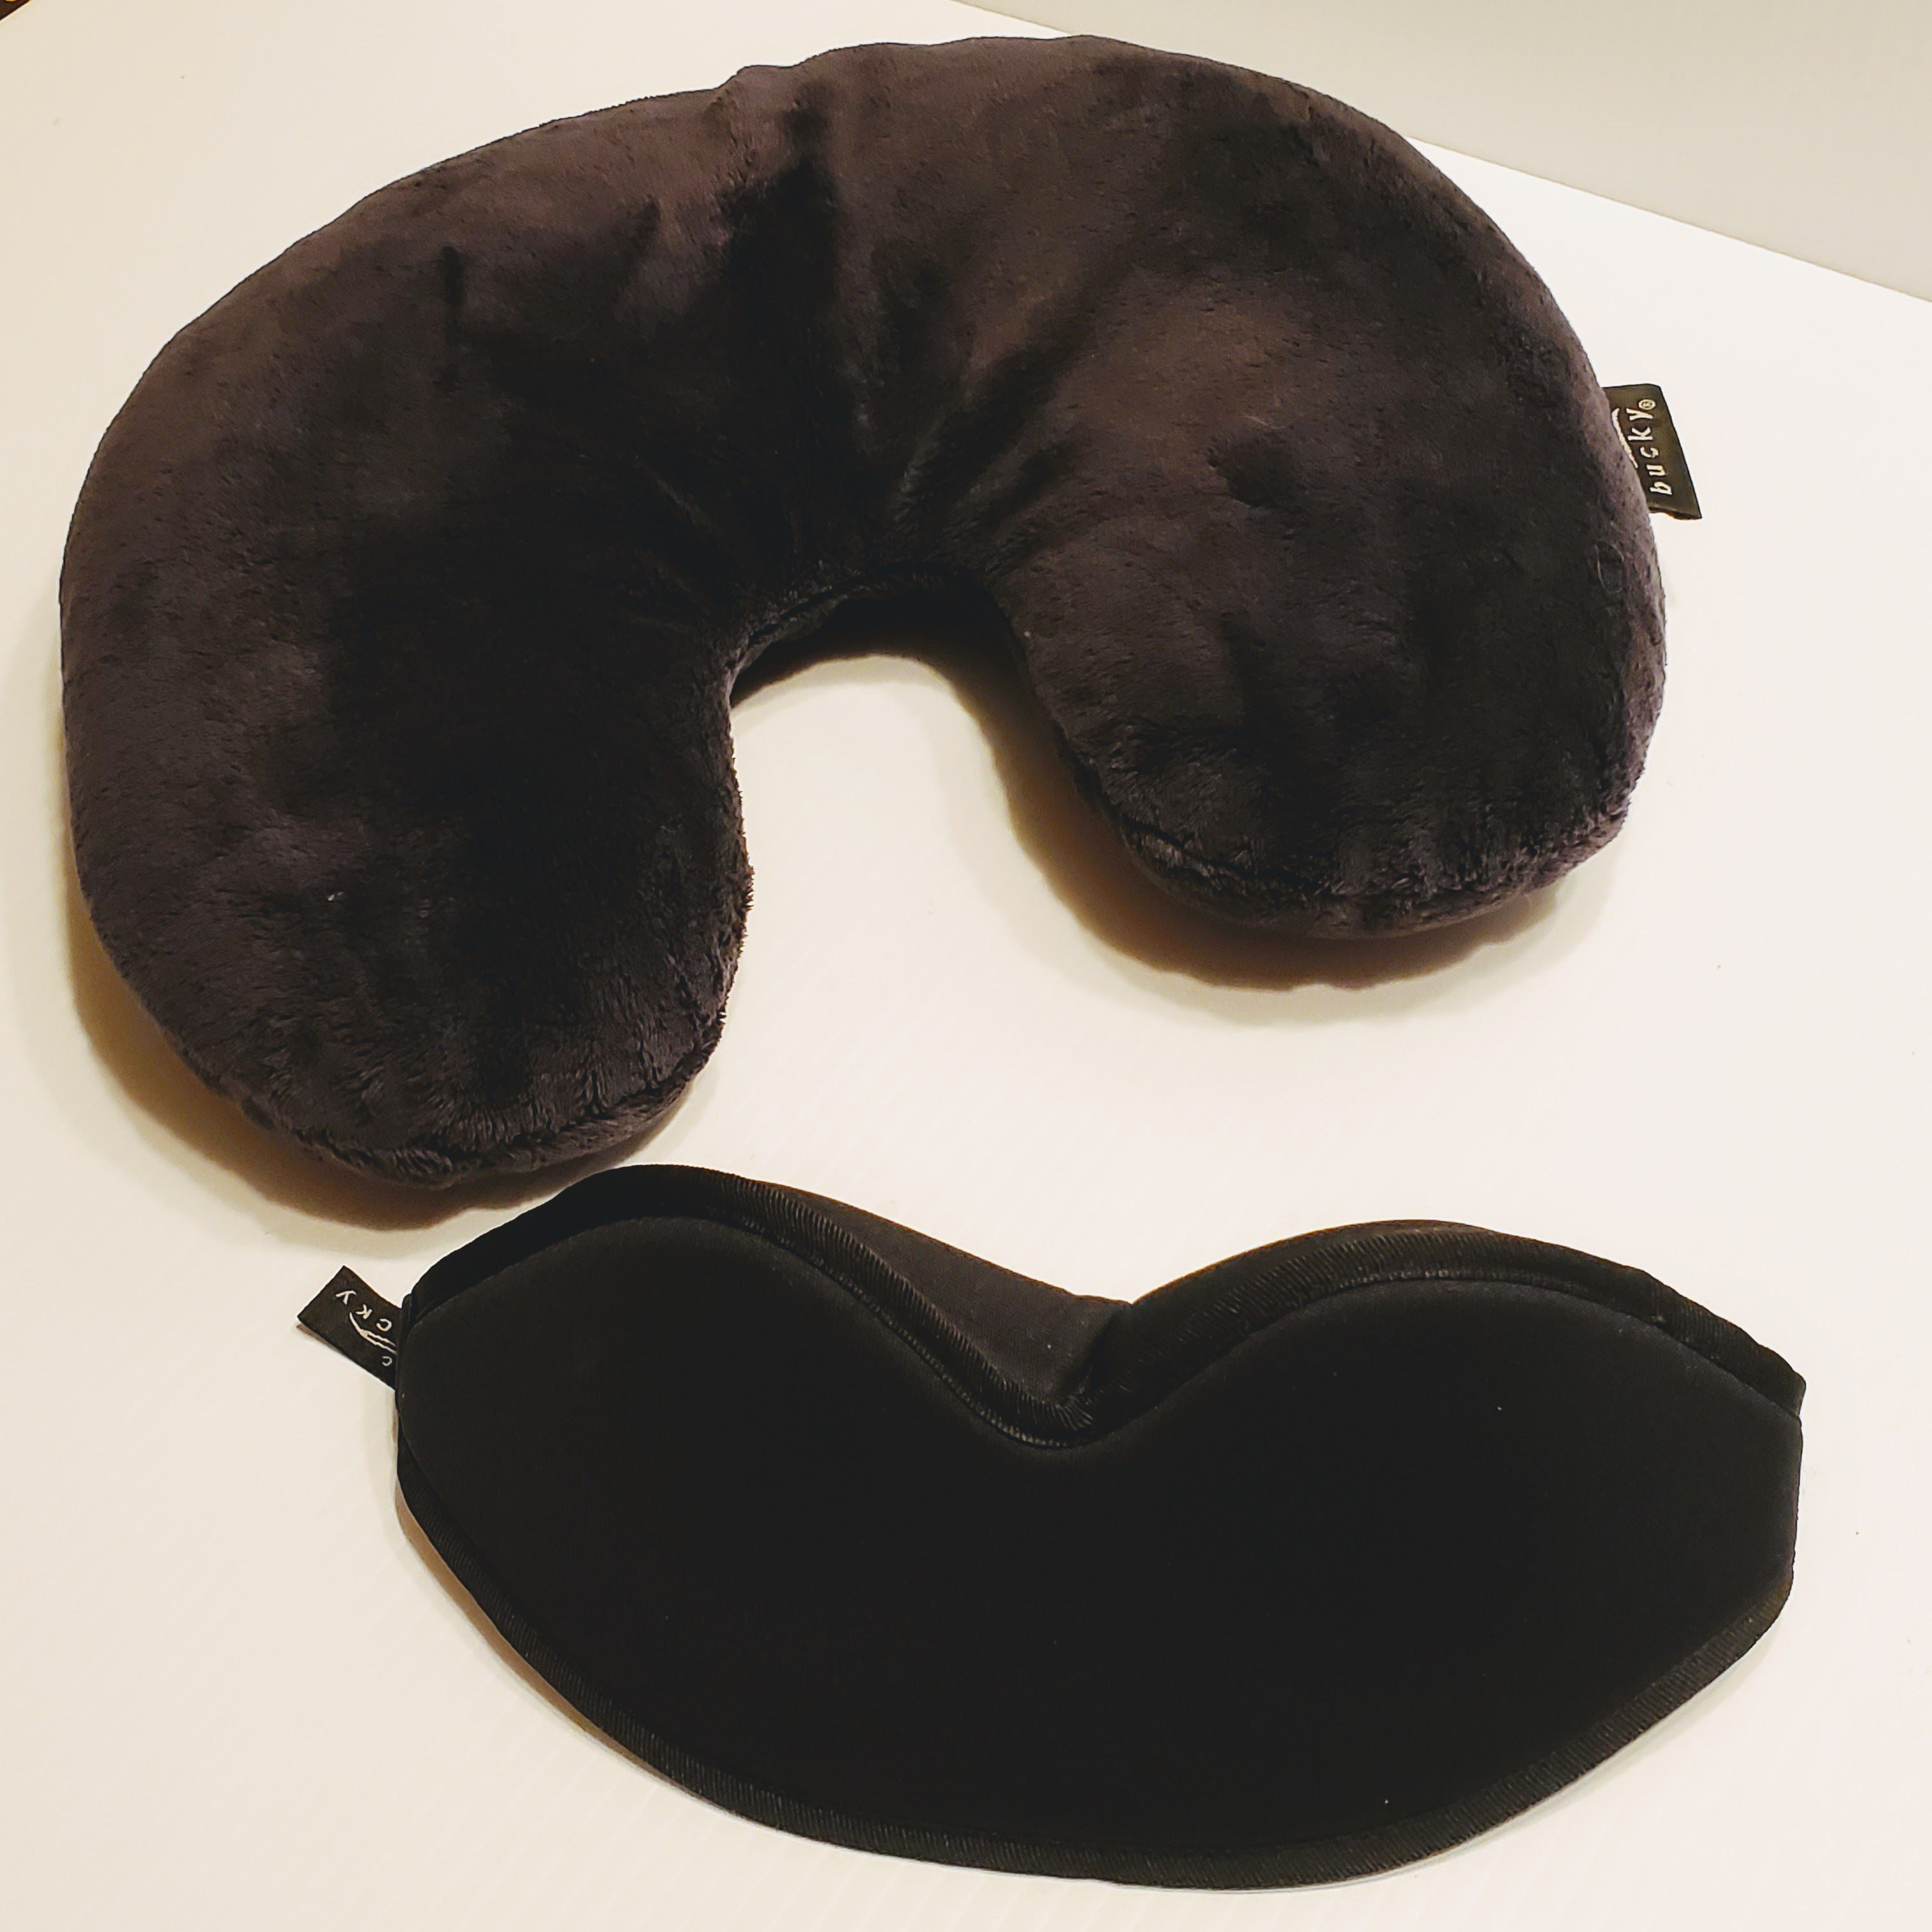 Bucky Buckwheat U-shape Travel Neck Pillow with Bucky Sleep eye mask.